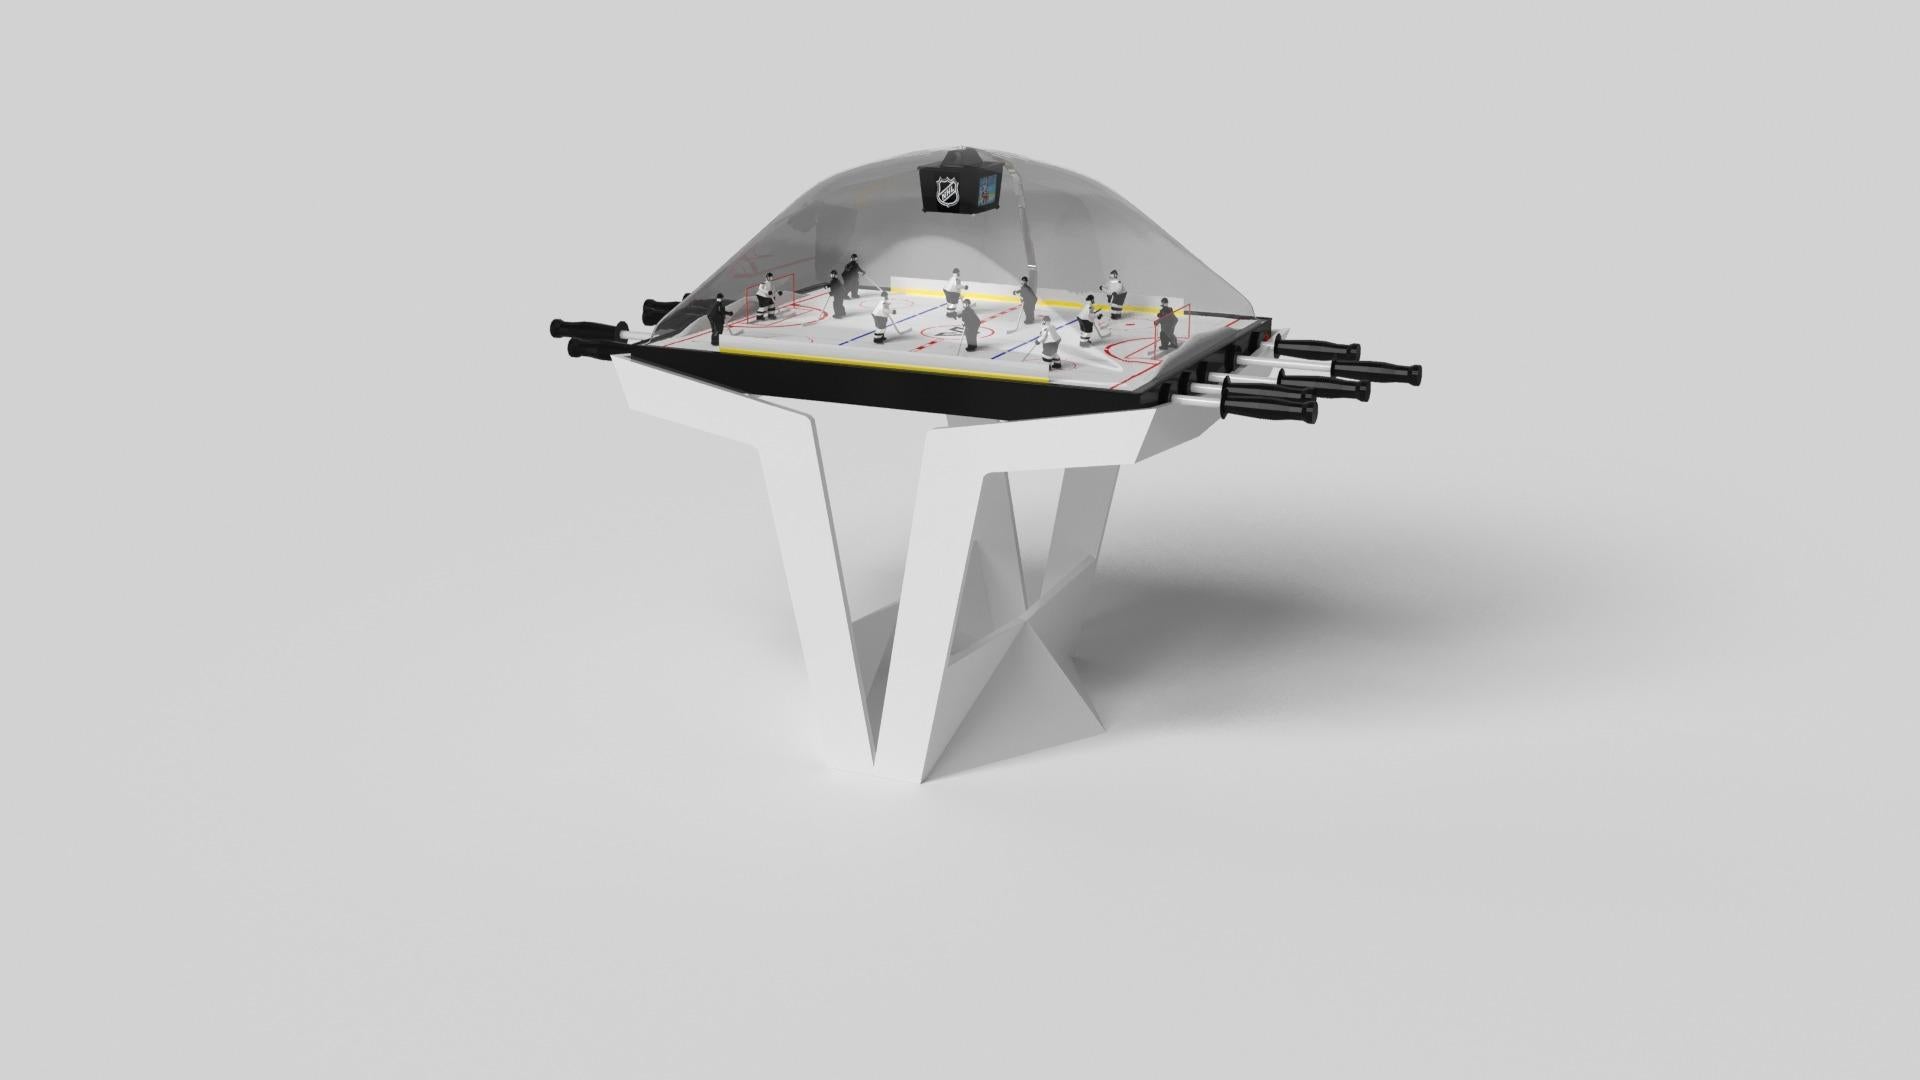 Der Enzo Dome-Hockeytisch ist von den aerodynamischen Winkeln der europäischen Spitzenfahrzeuge inspiriert. Das Design mit seinen schlanken, V-förmigen Linien und der durchdachten Nutzung des negativen Raums verleiht diesem Tisch einen